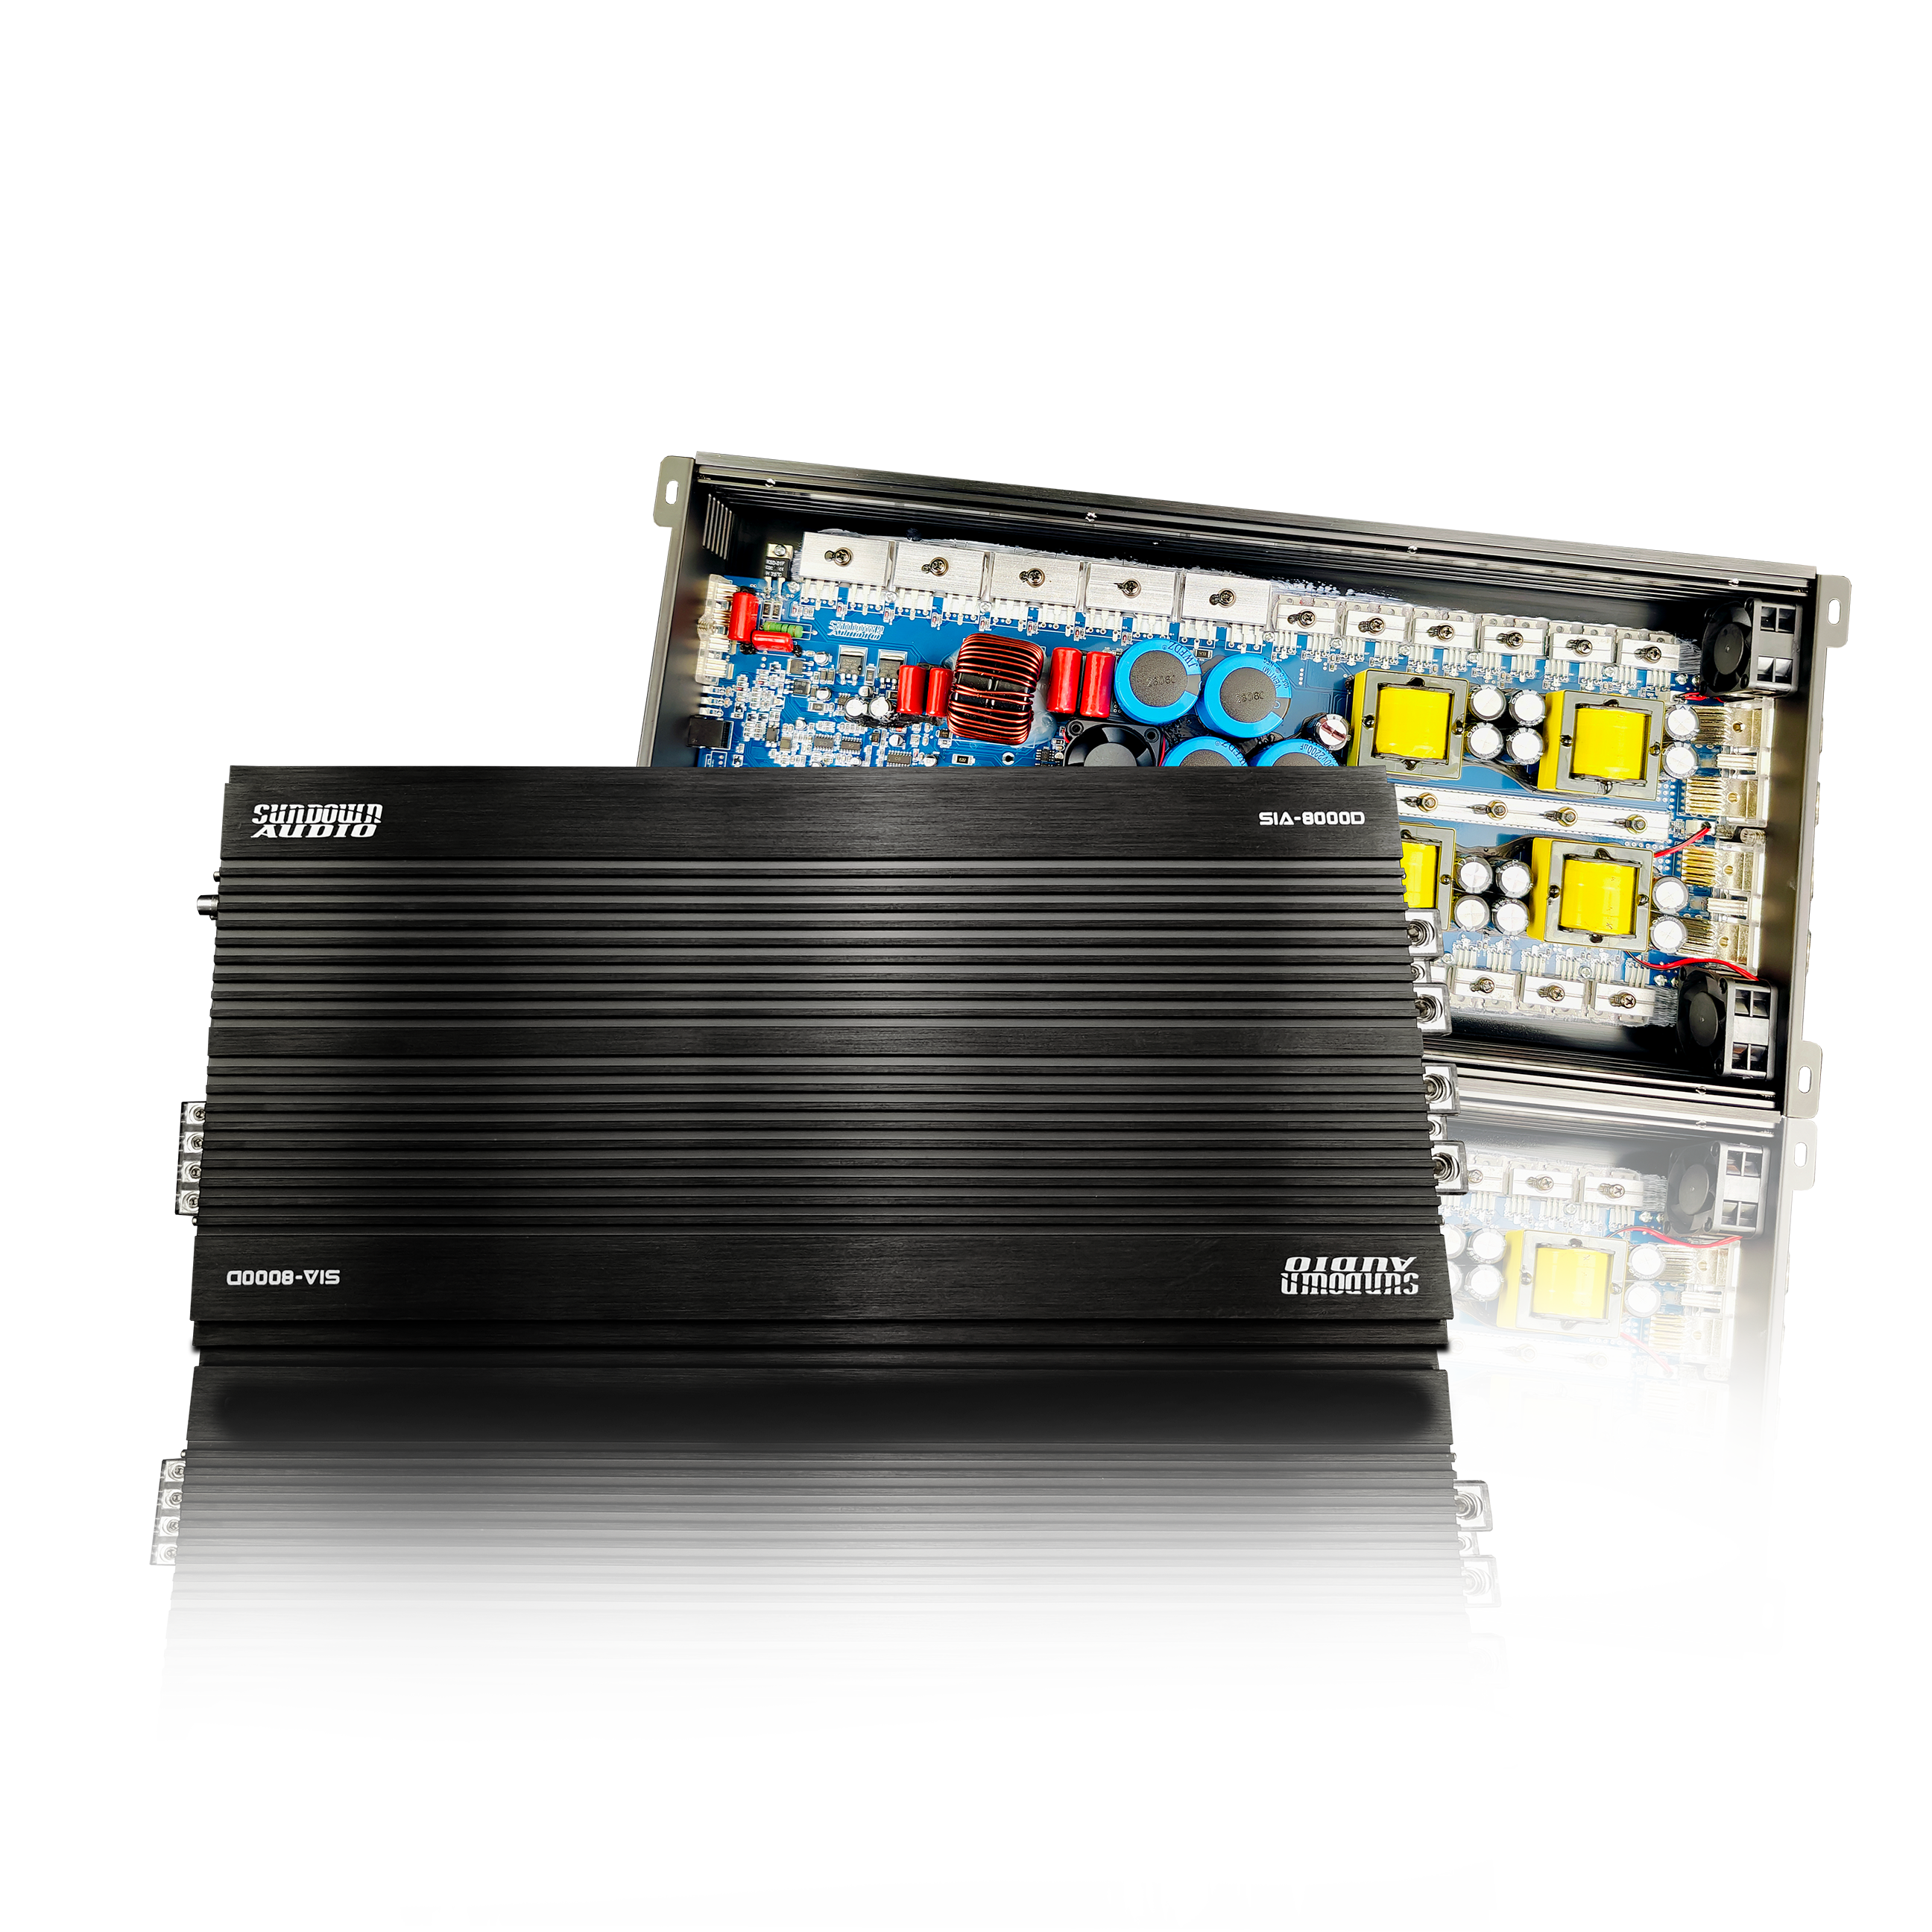 SIA-8000D SMART 8000W Wide Range Class D Amplifier